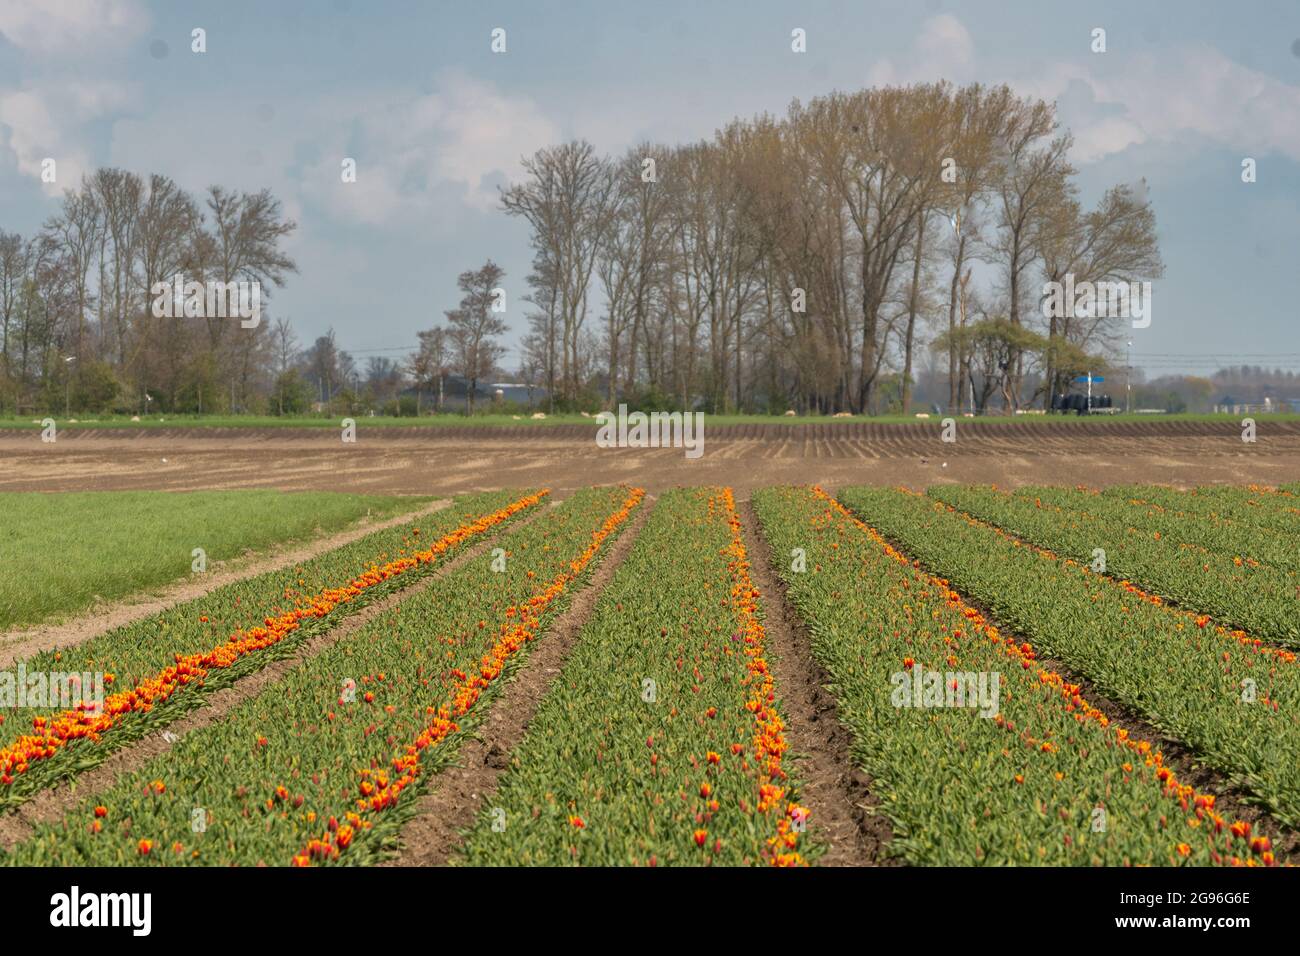 Tulipani rosso-giallo in un campo con alberi all'orizzonte. Regione Hoorn, West-friesland, Nord-Olanda, Paesi Bassi. Foto Stock